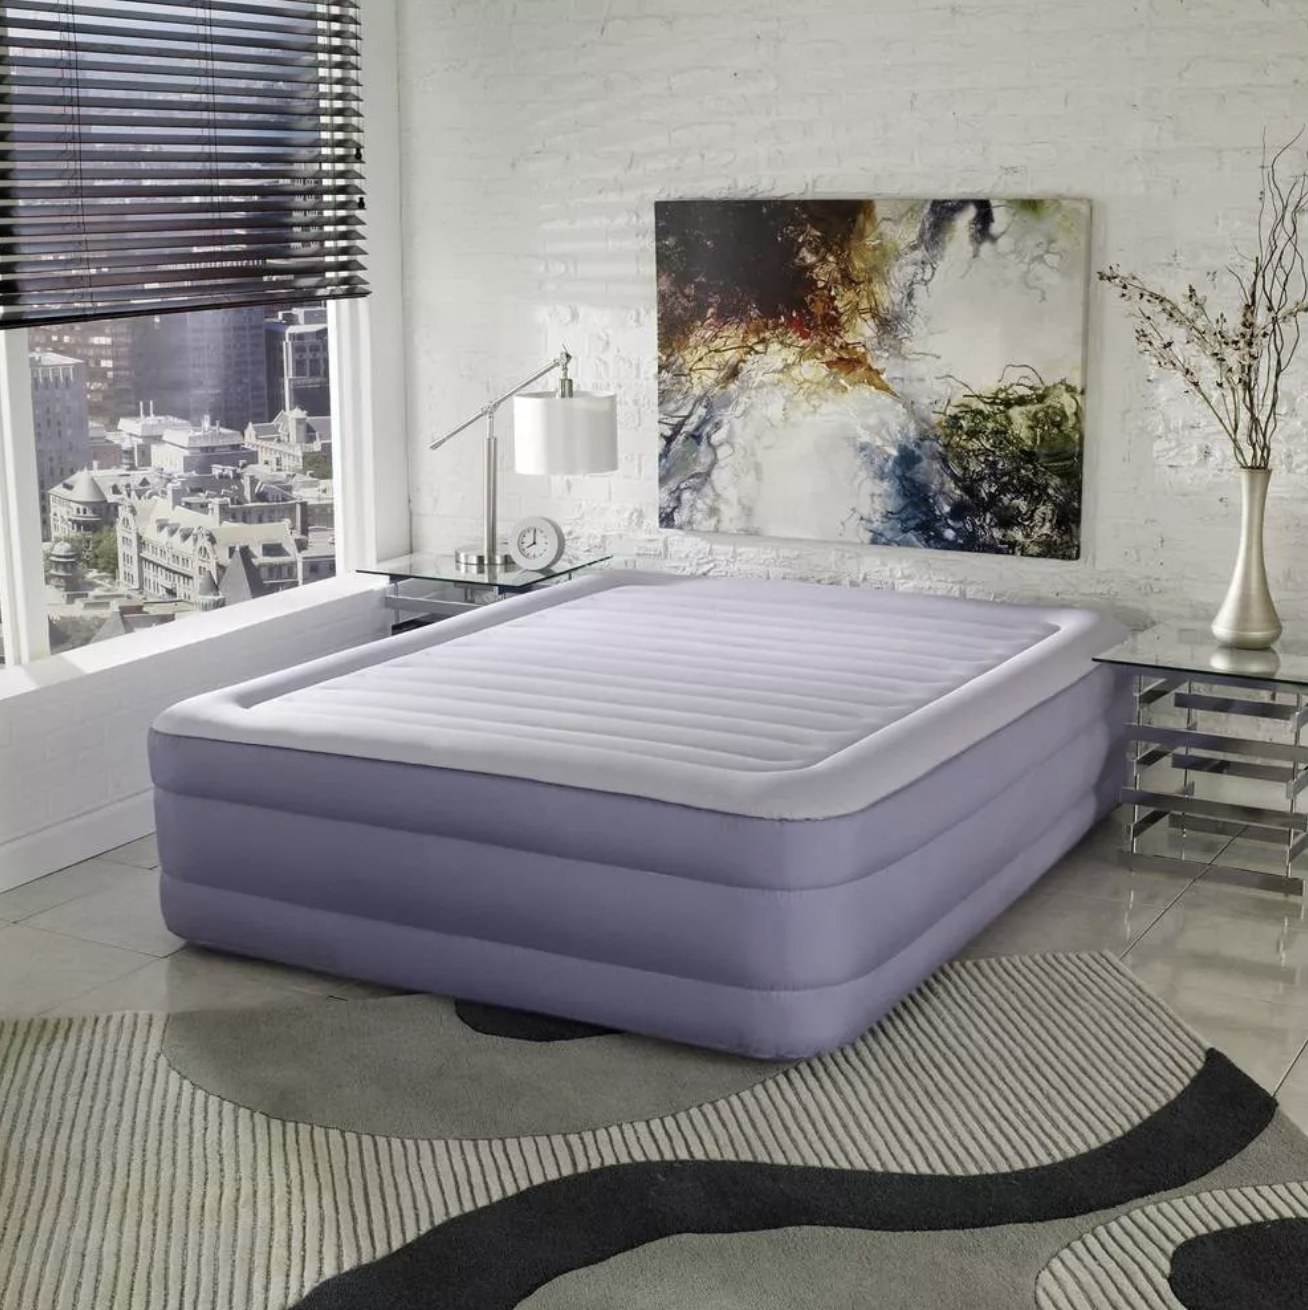 The air mattress, featuring a pillow top